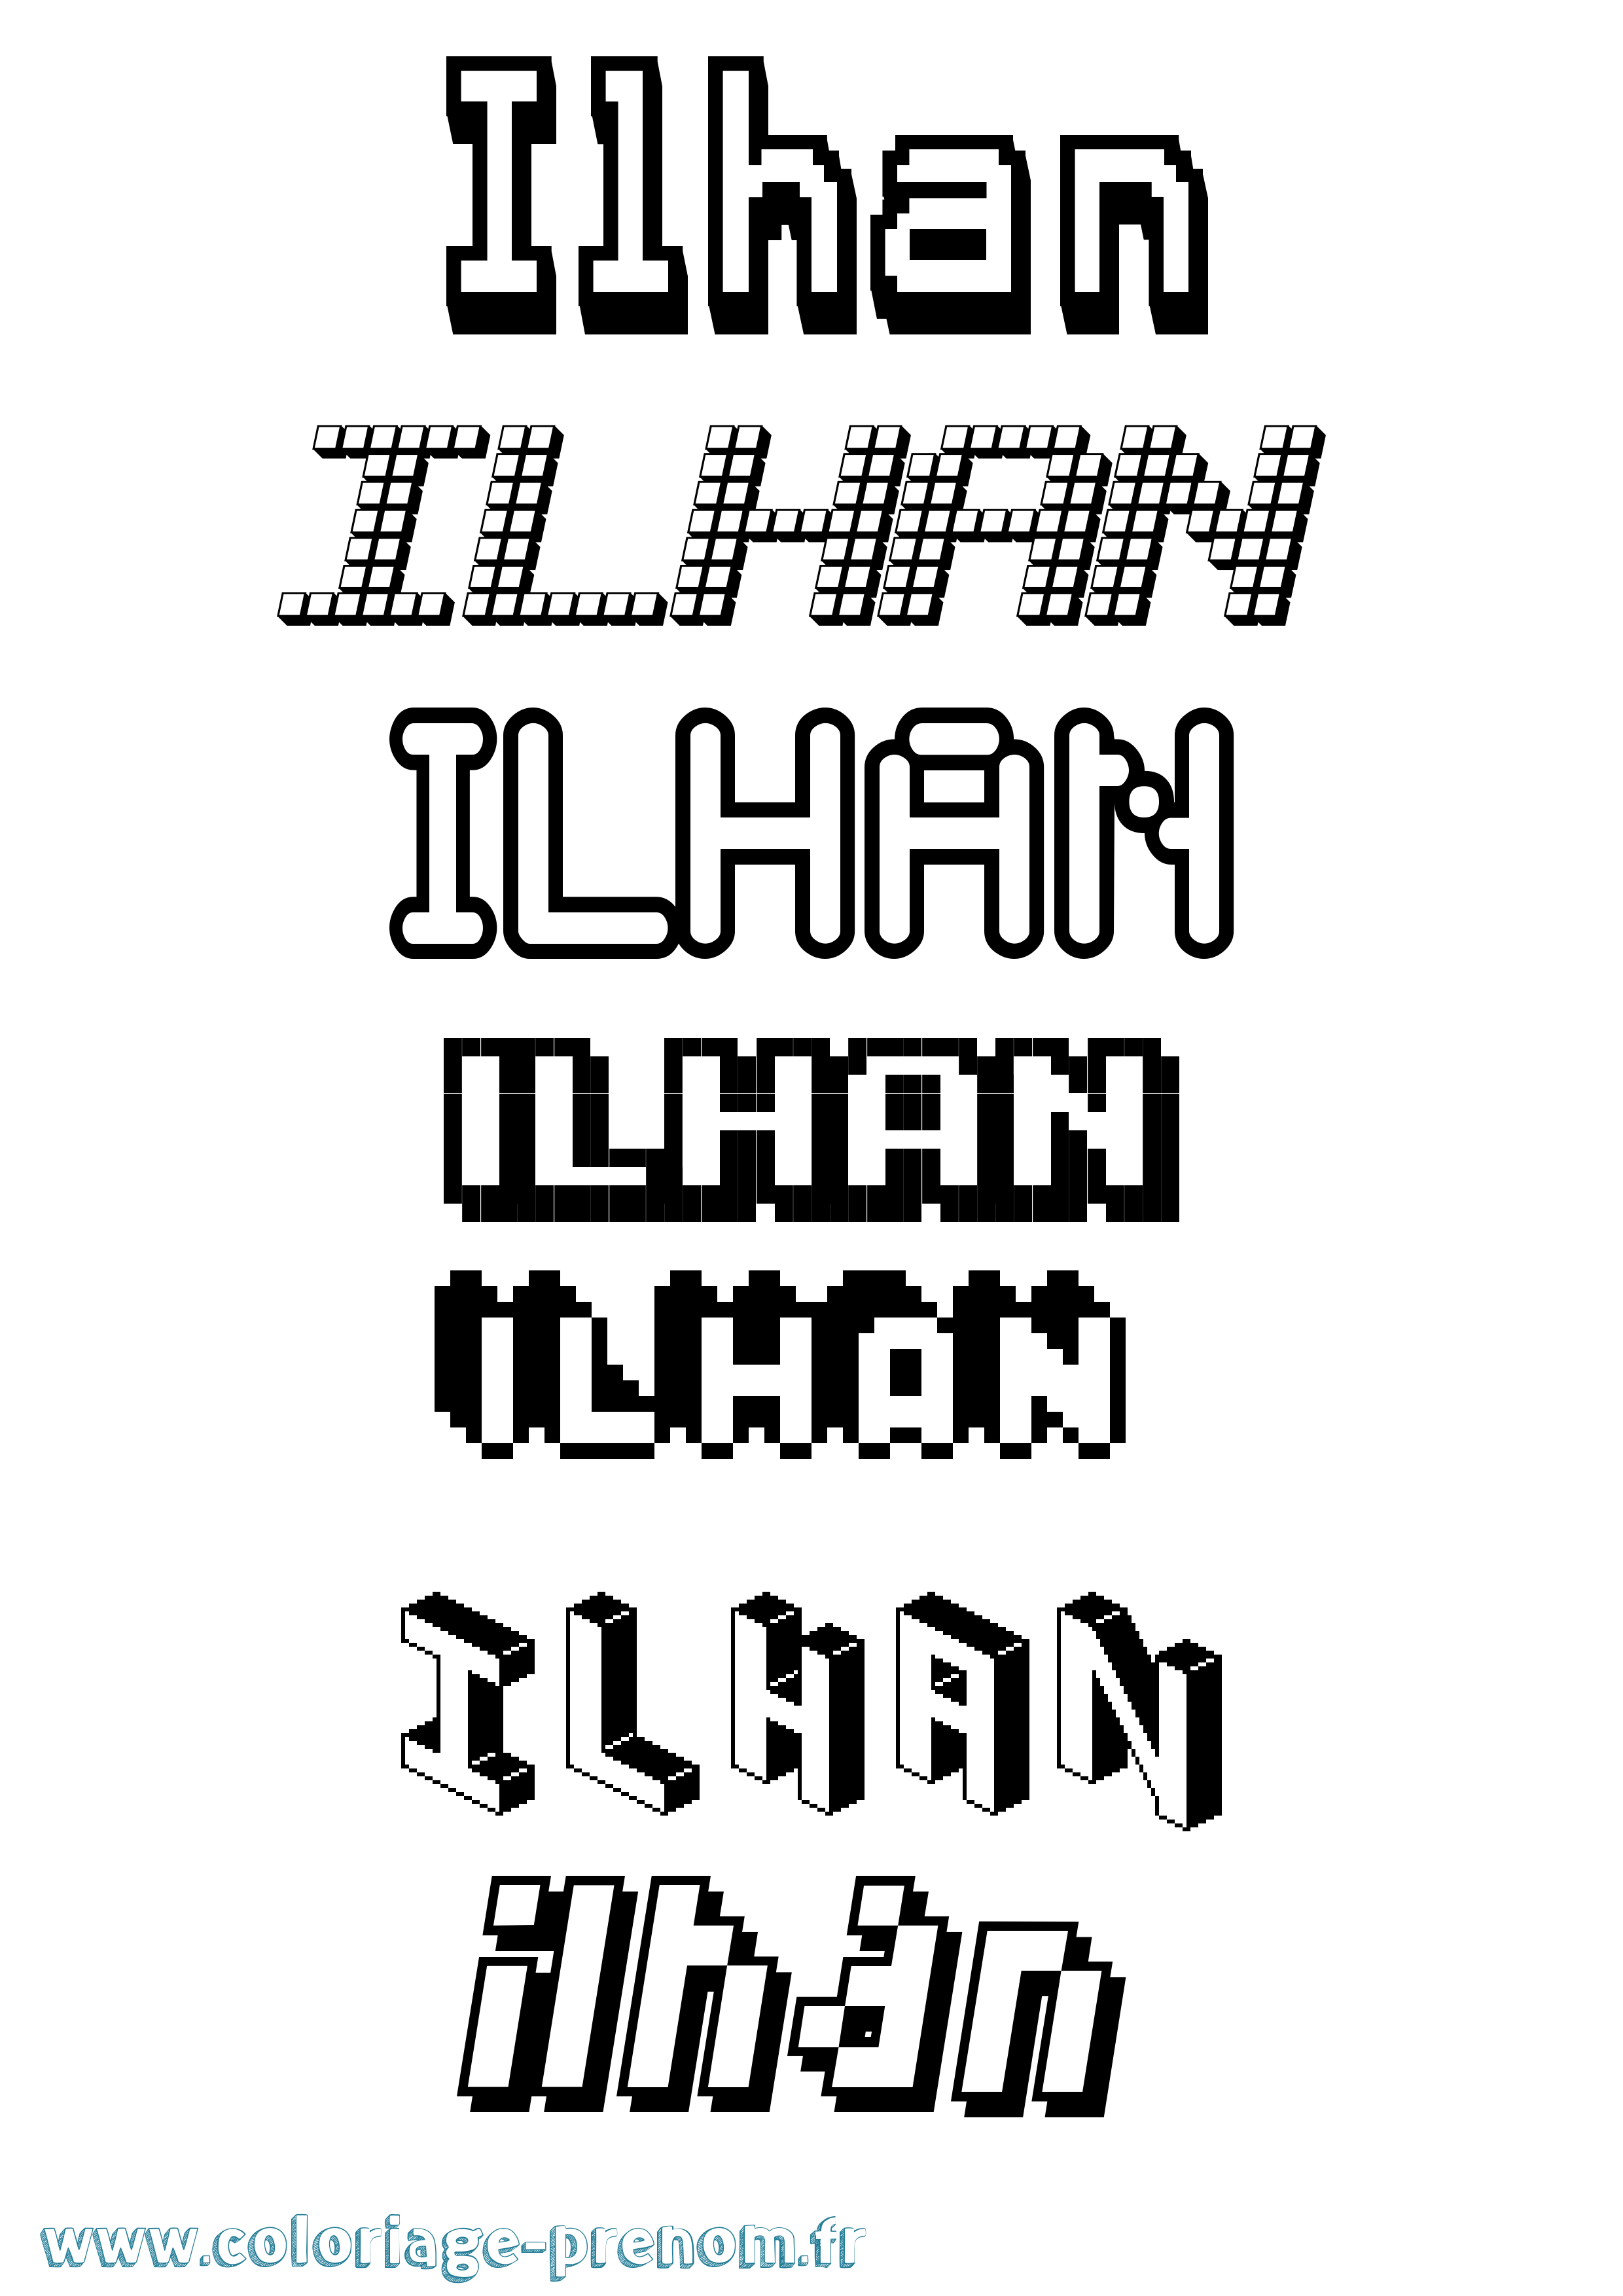 Coloriage prénom Ilhan Pixel